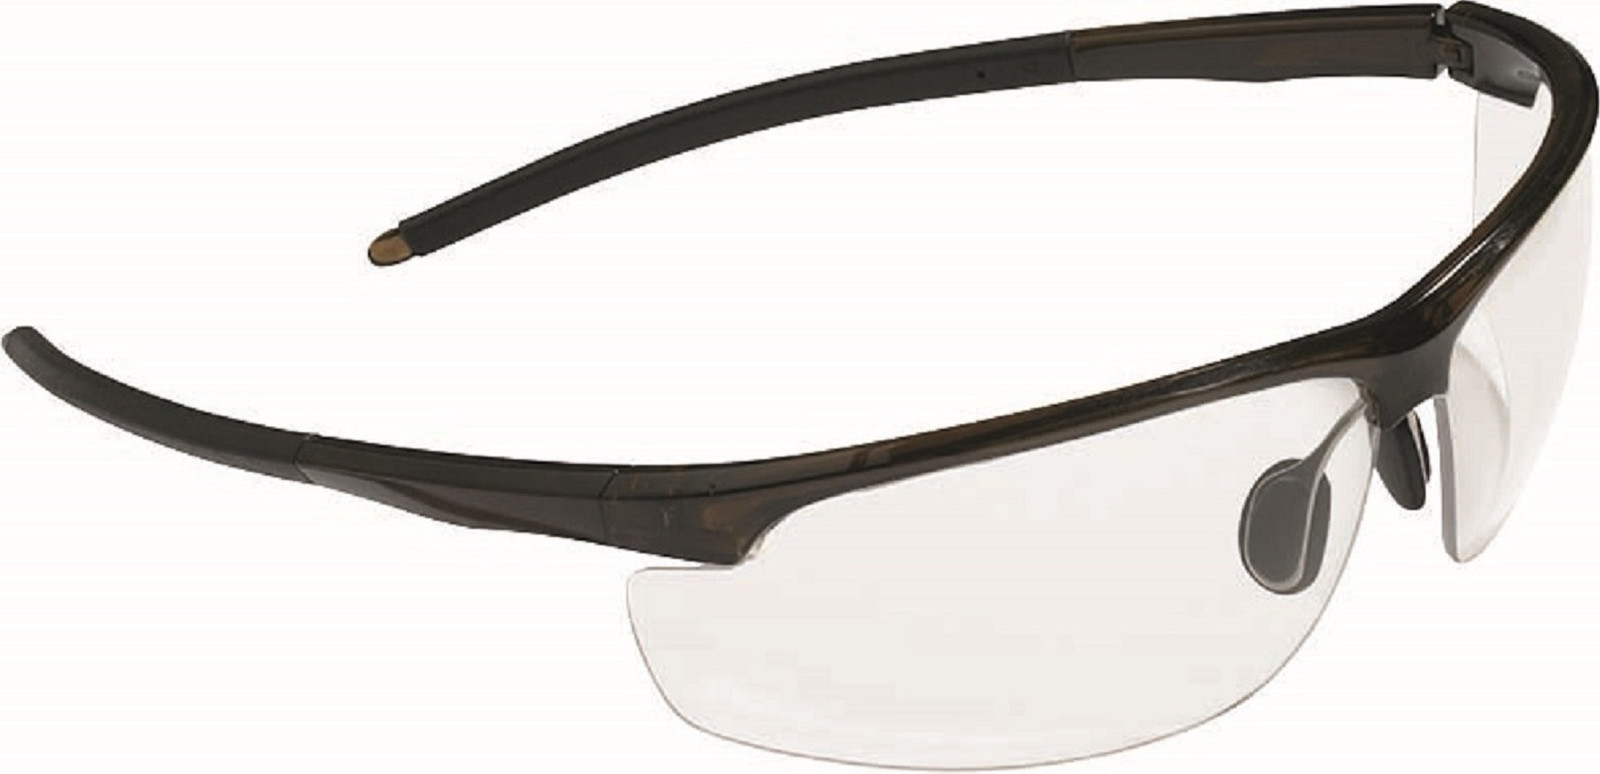 Ochranné okuliare Leone - farba: číra